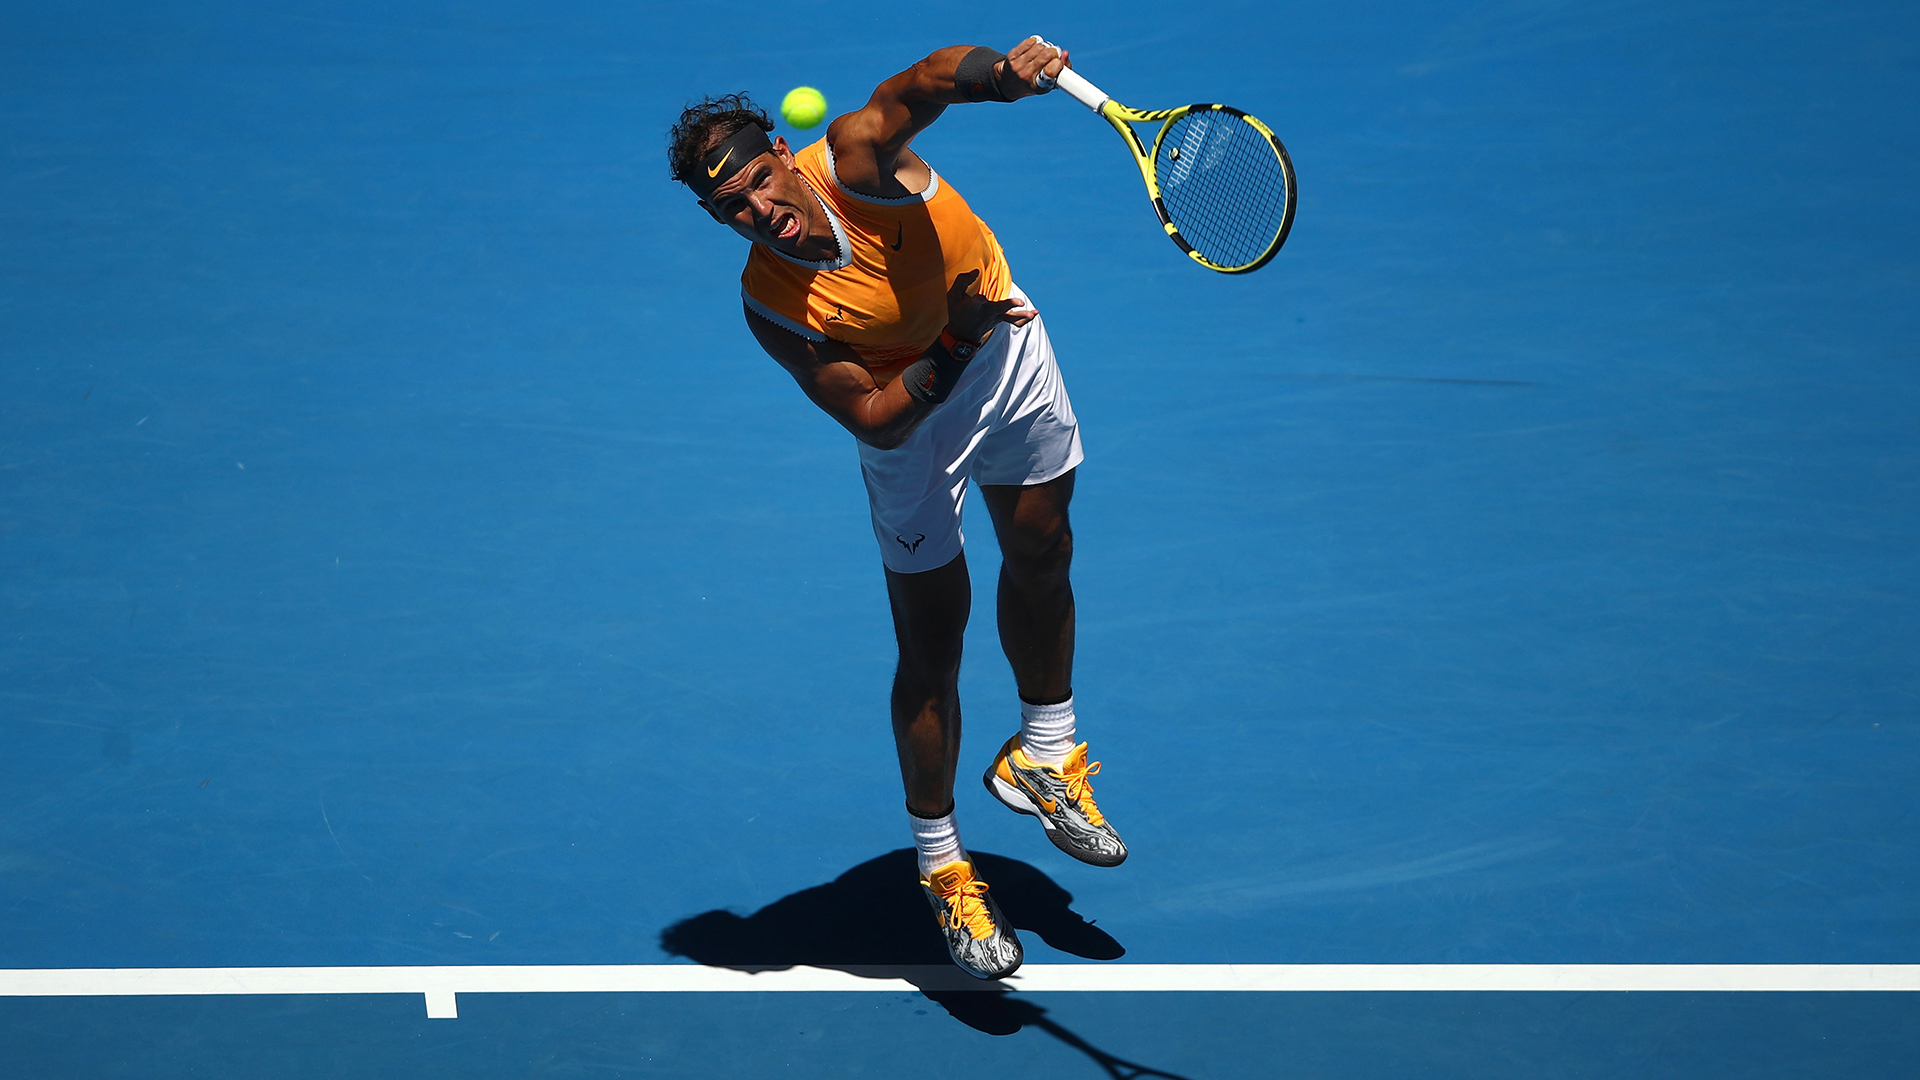 Australian Open 2019 Nadal , HD Wallpaper & Backgrounds